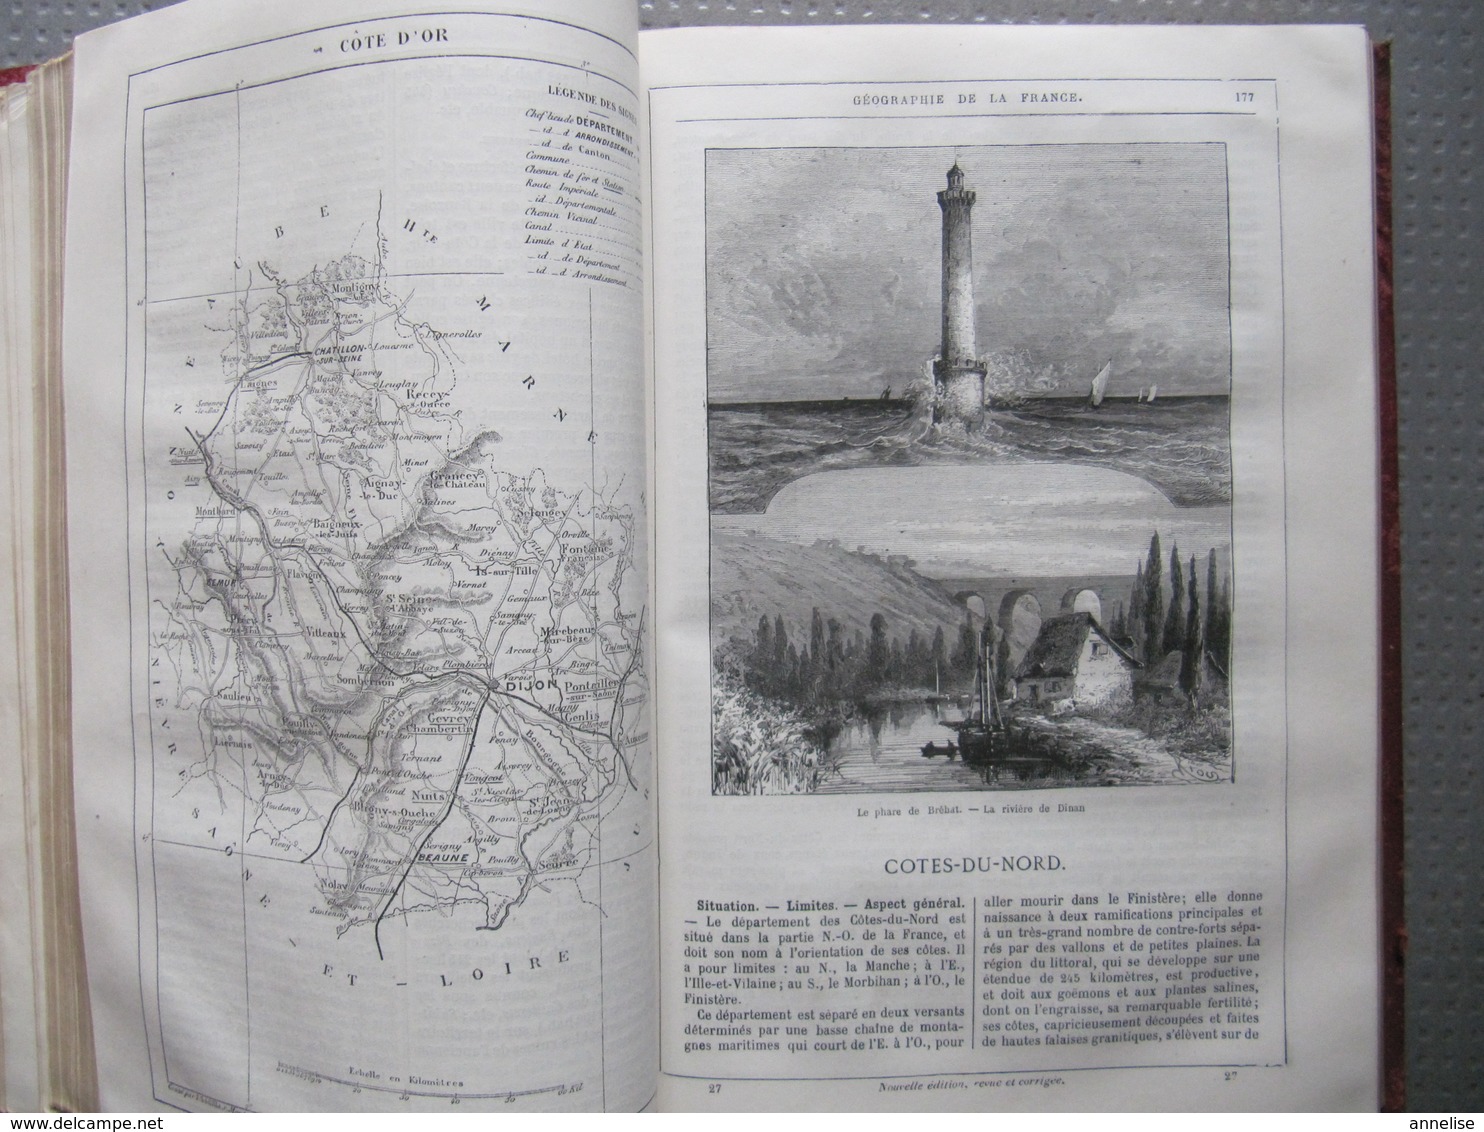 HETZEL Jules VERNE "Géographie illustrée de la France et de ses colonies" (1868)